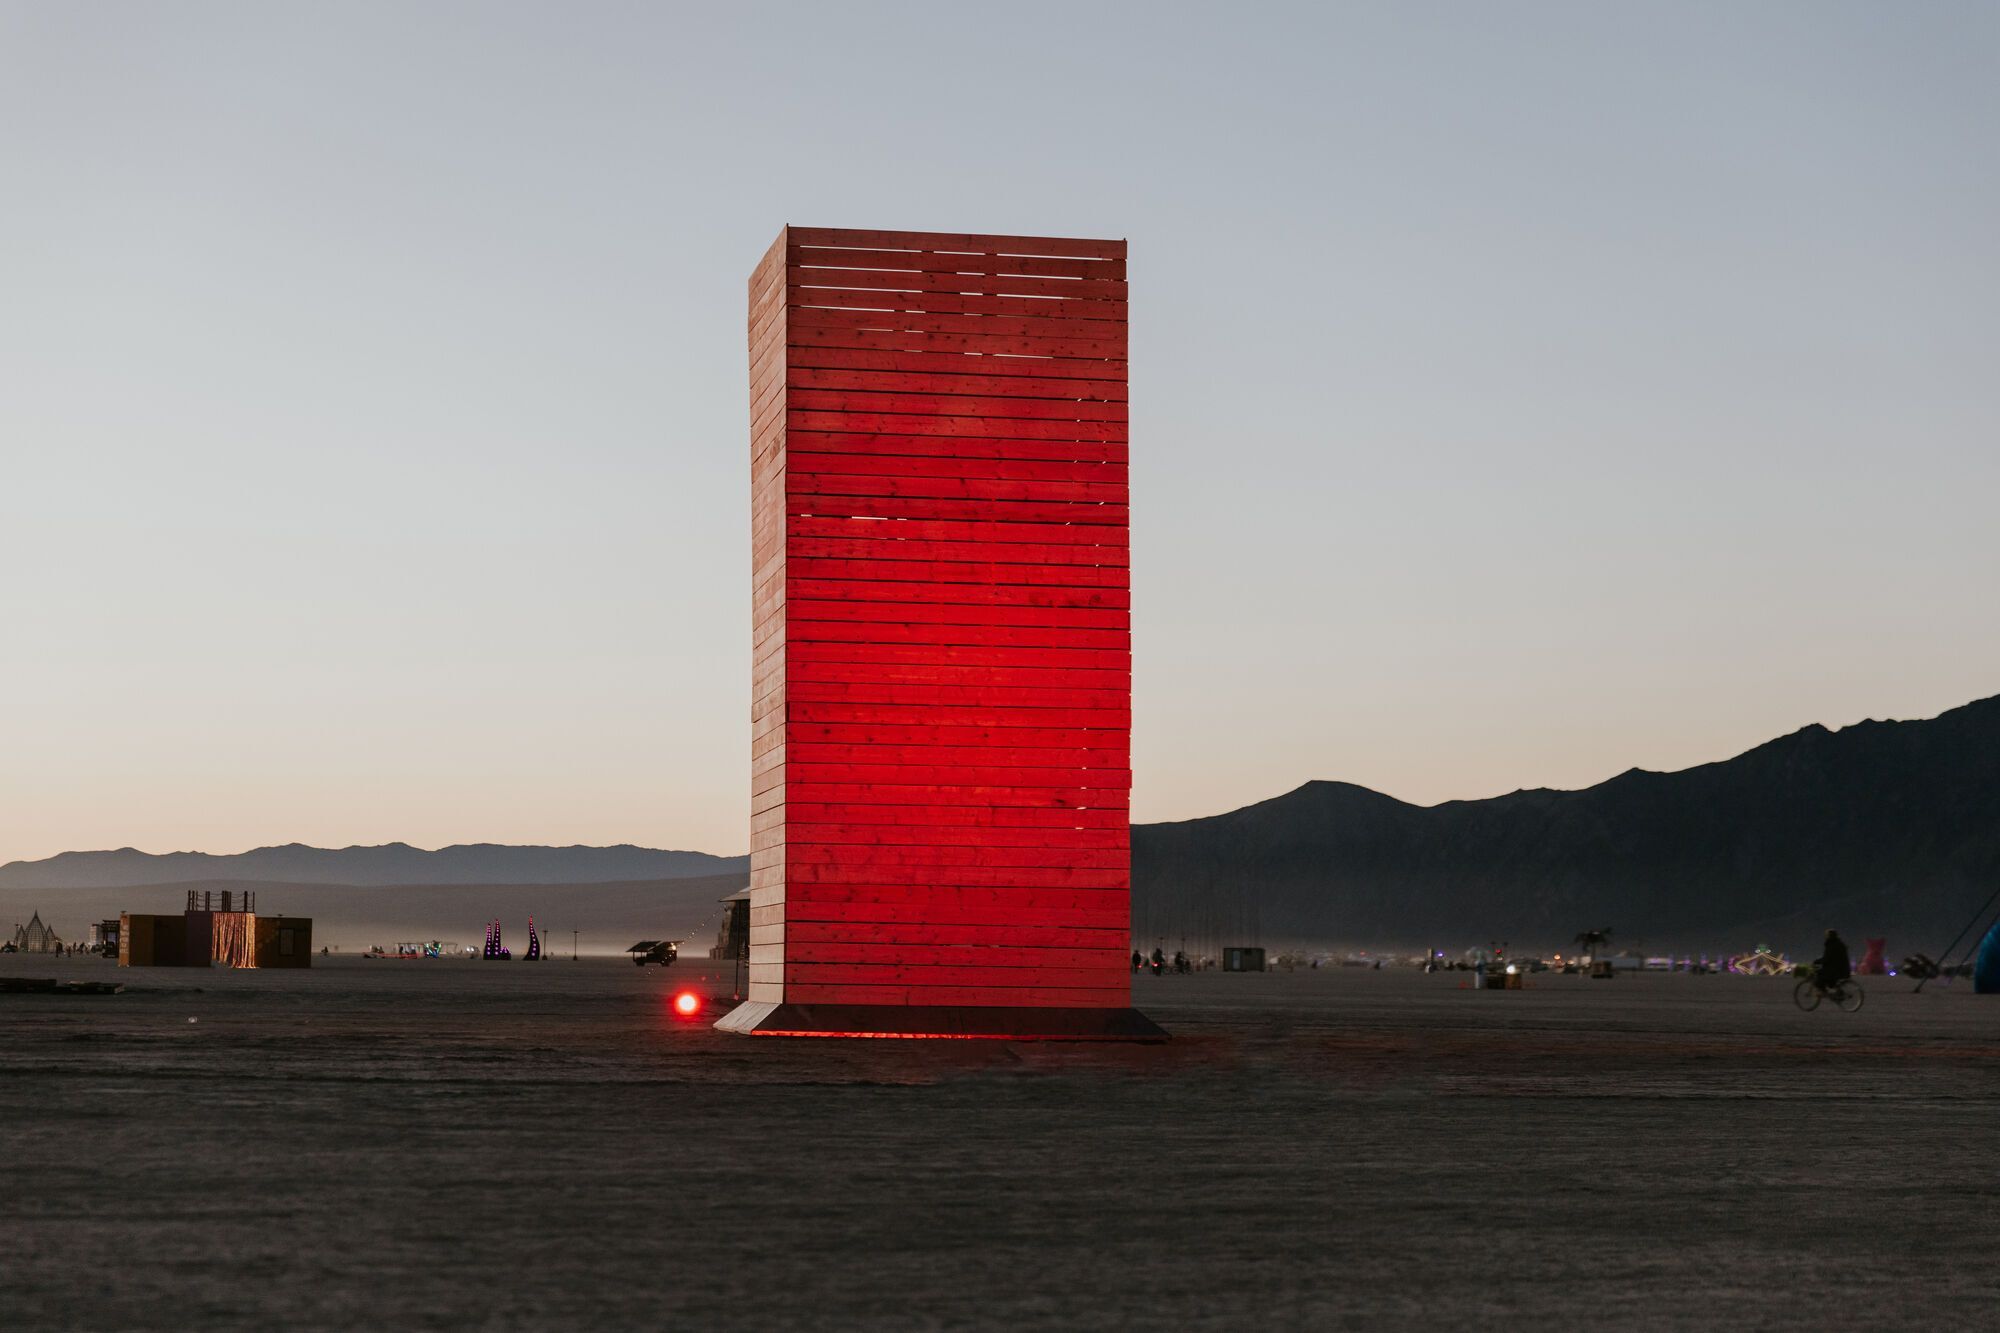 Народиться через спалення: Україна на Burning Man представить унікальну скульптуру, про яку говоритиме весь світ